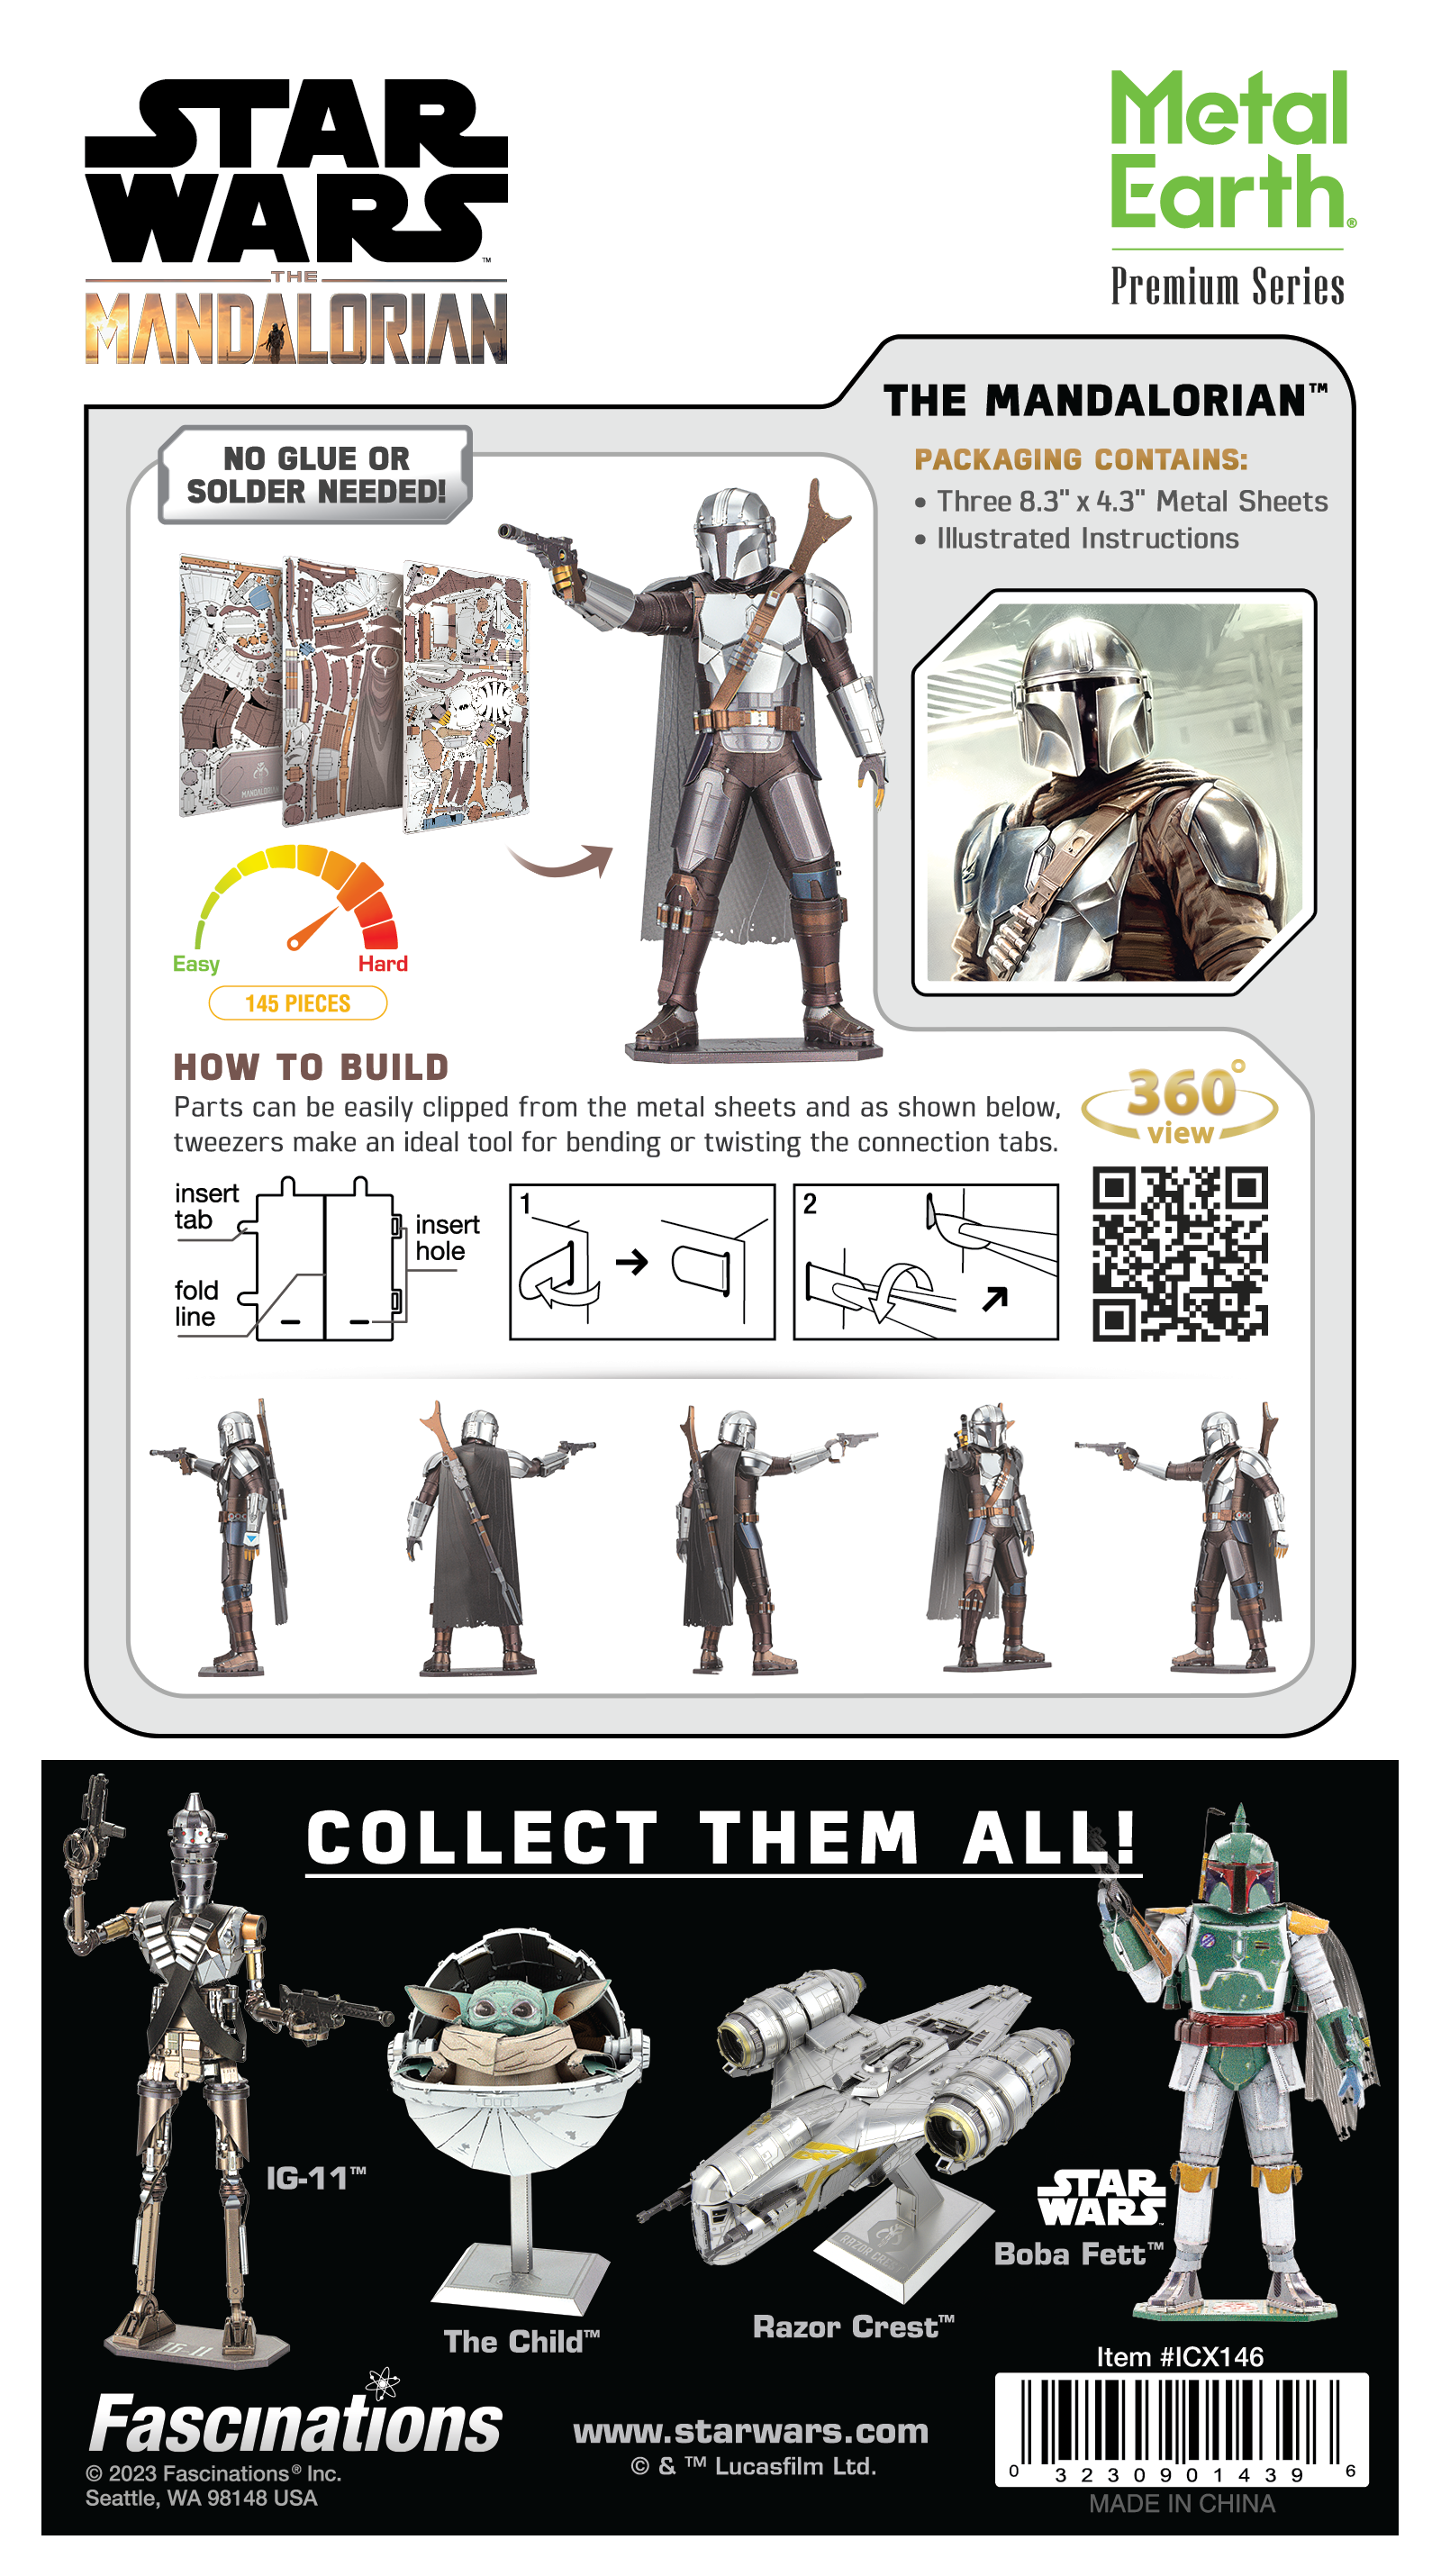 Metal Earth - Premium Series - Star Wars: Mandalorian Model Kit